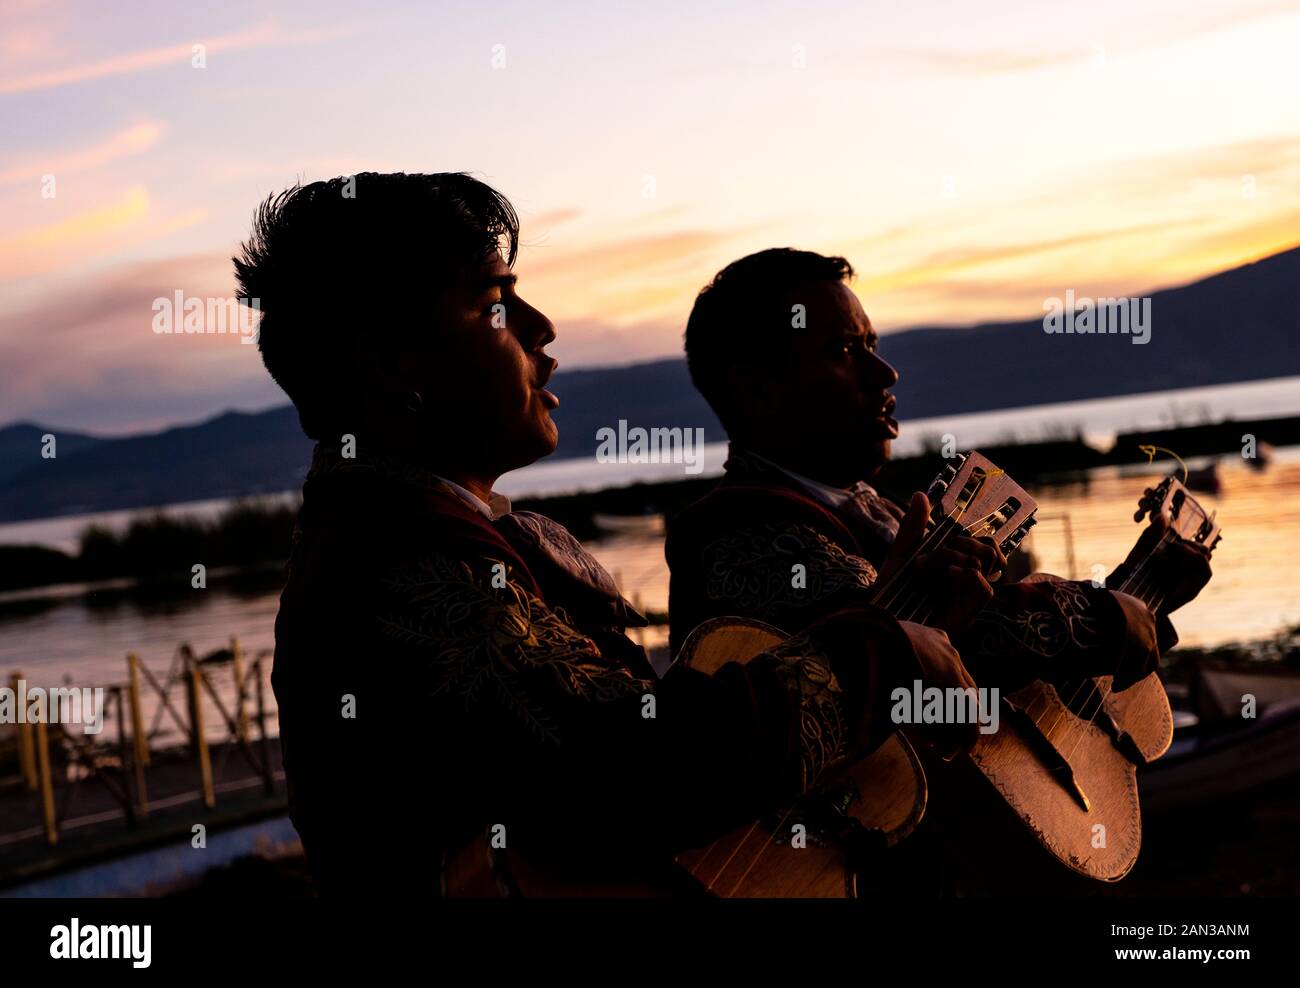 Musicisti Mariachi di cantare e suonare la chitarra durante un tramonto nel lago Chapala, Messico Foto Stock